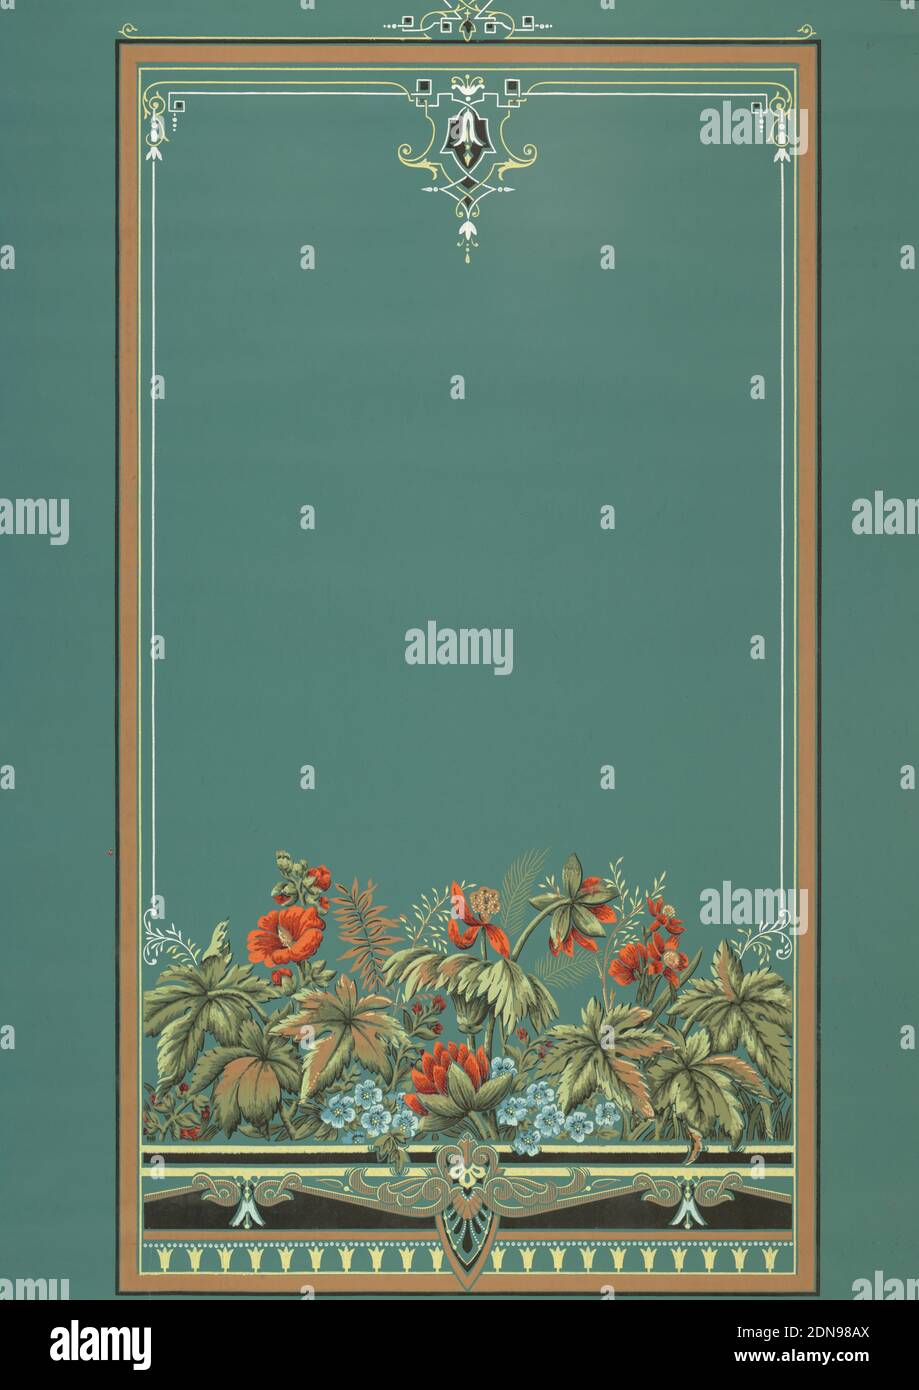 Fensterschirm, maschinenbedruckt, großer rechteckiger Rahmen, breites Band von bunten Blumen über den Boden des Schattens. Gedruckt auf grünem Papier., USA, 1875–1890, Wandbeläge, Fensterschirm Stockfoto